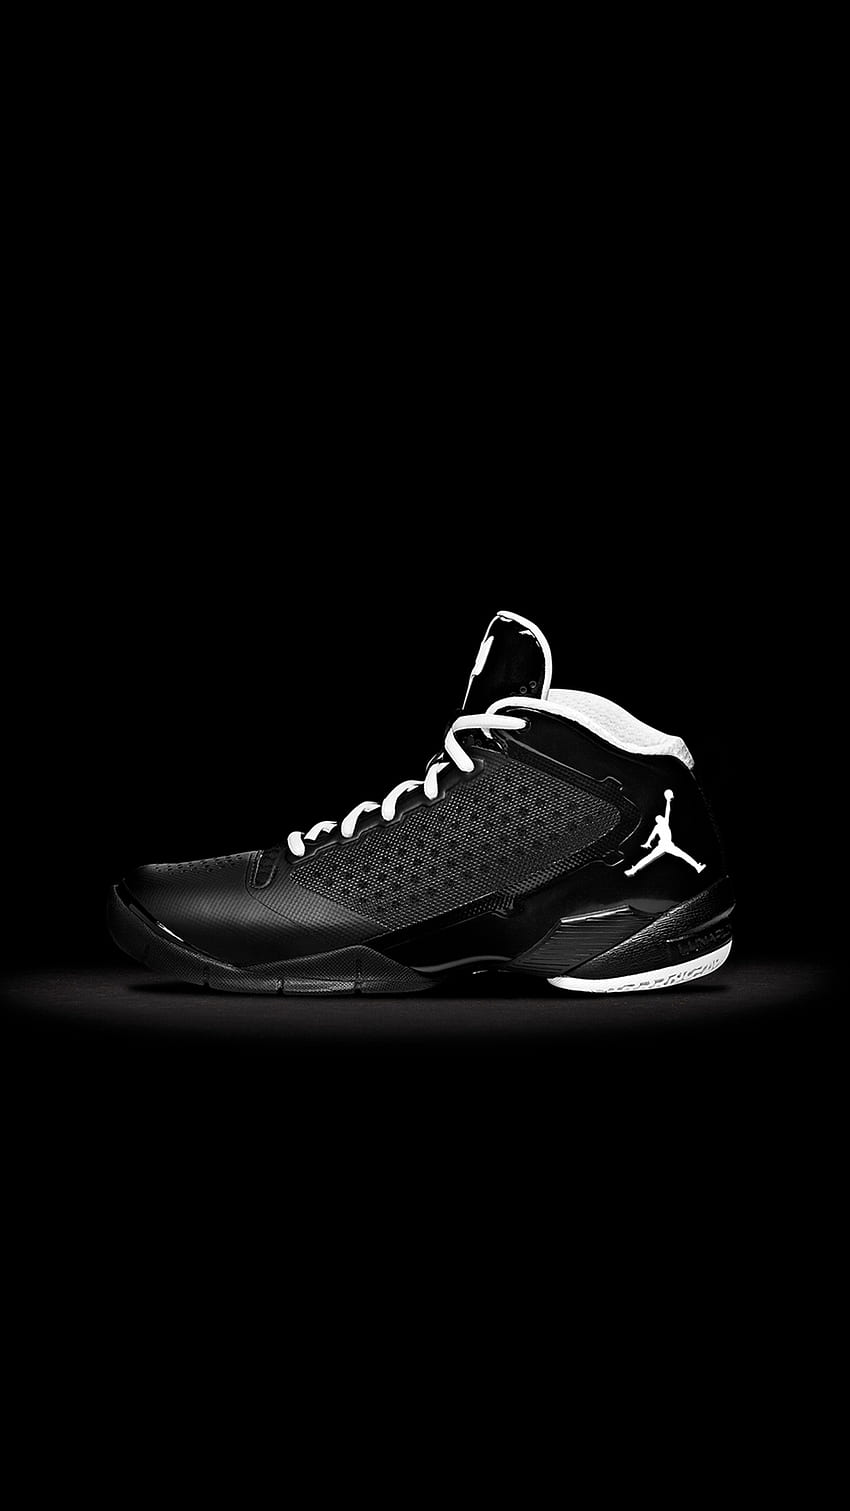 Sepatu Jordan Fly Wade Nike Seni iPhone 8, Sepatu Nike wallpaper ponsel HD